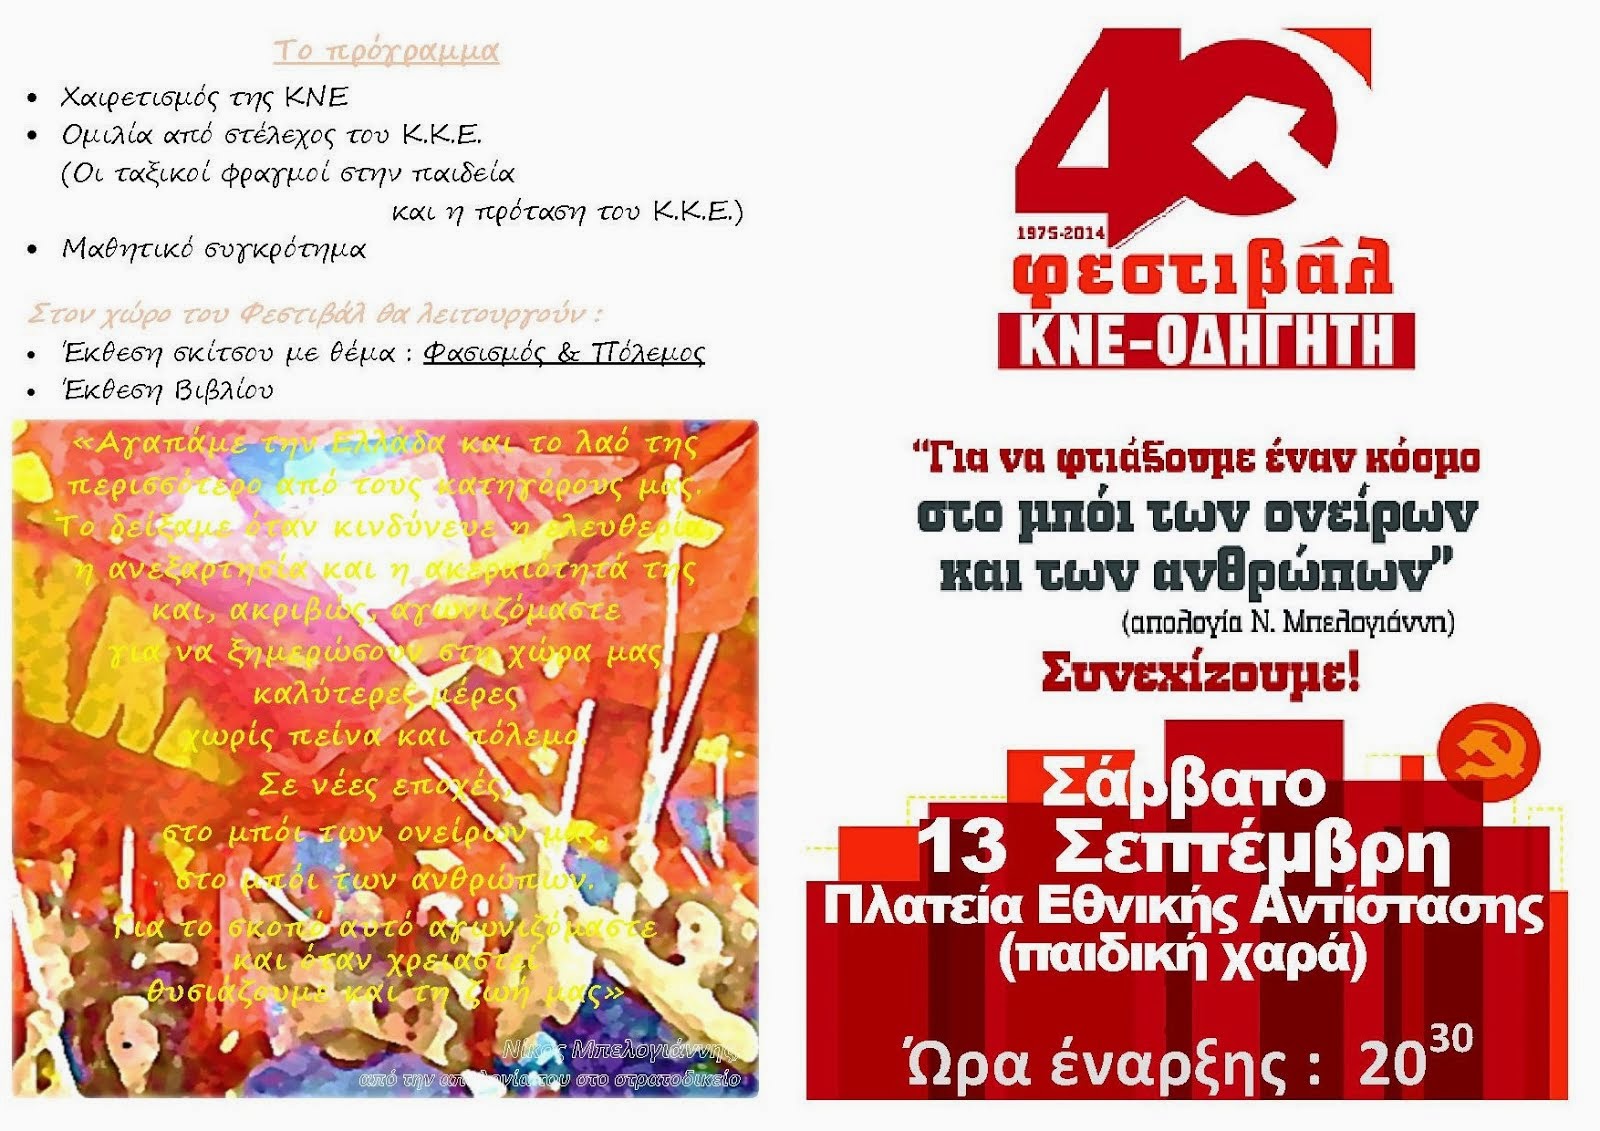 40ο Φεστιβάλ ΚΝΕ-Οδηγητή Άμφισσα,  ΣΑΒΒΑΤΟ 13 ΣΕΠΤΕΜΒΡΗ Πλατεία Εθνικής Αντίστασης